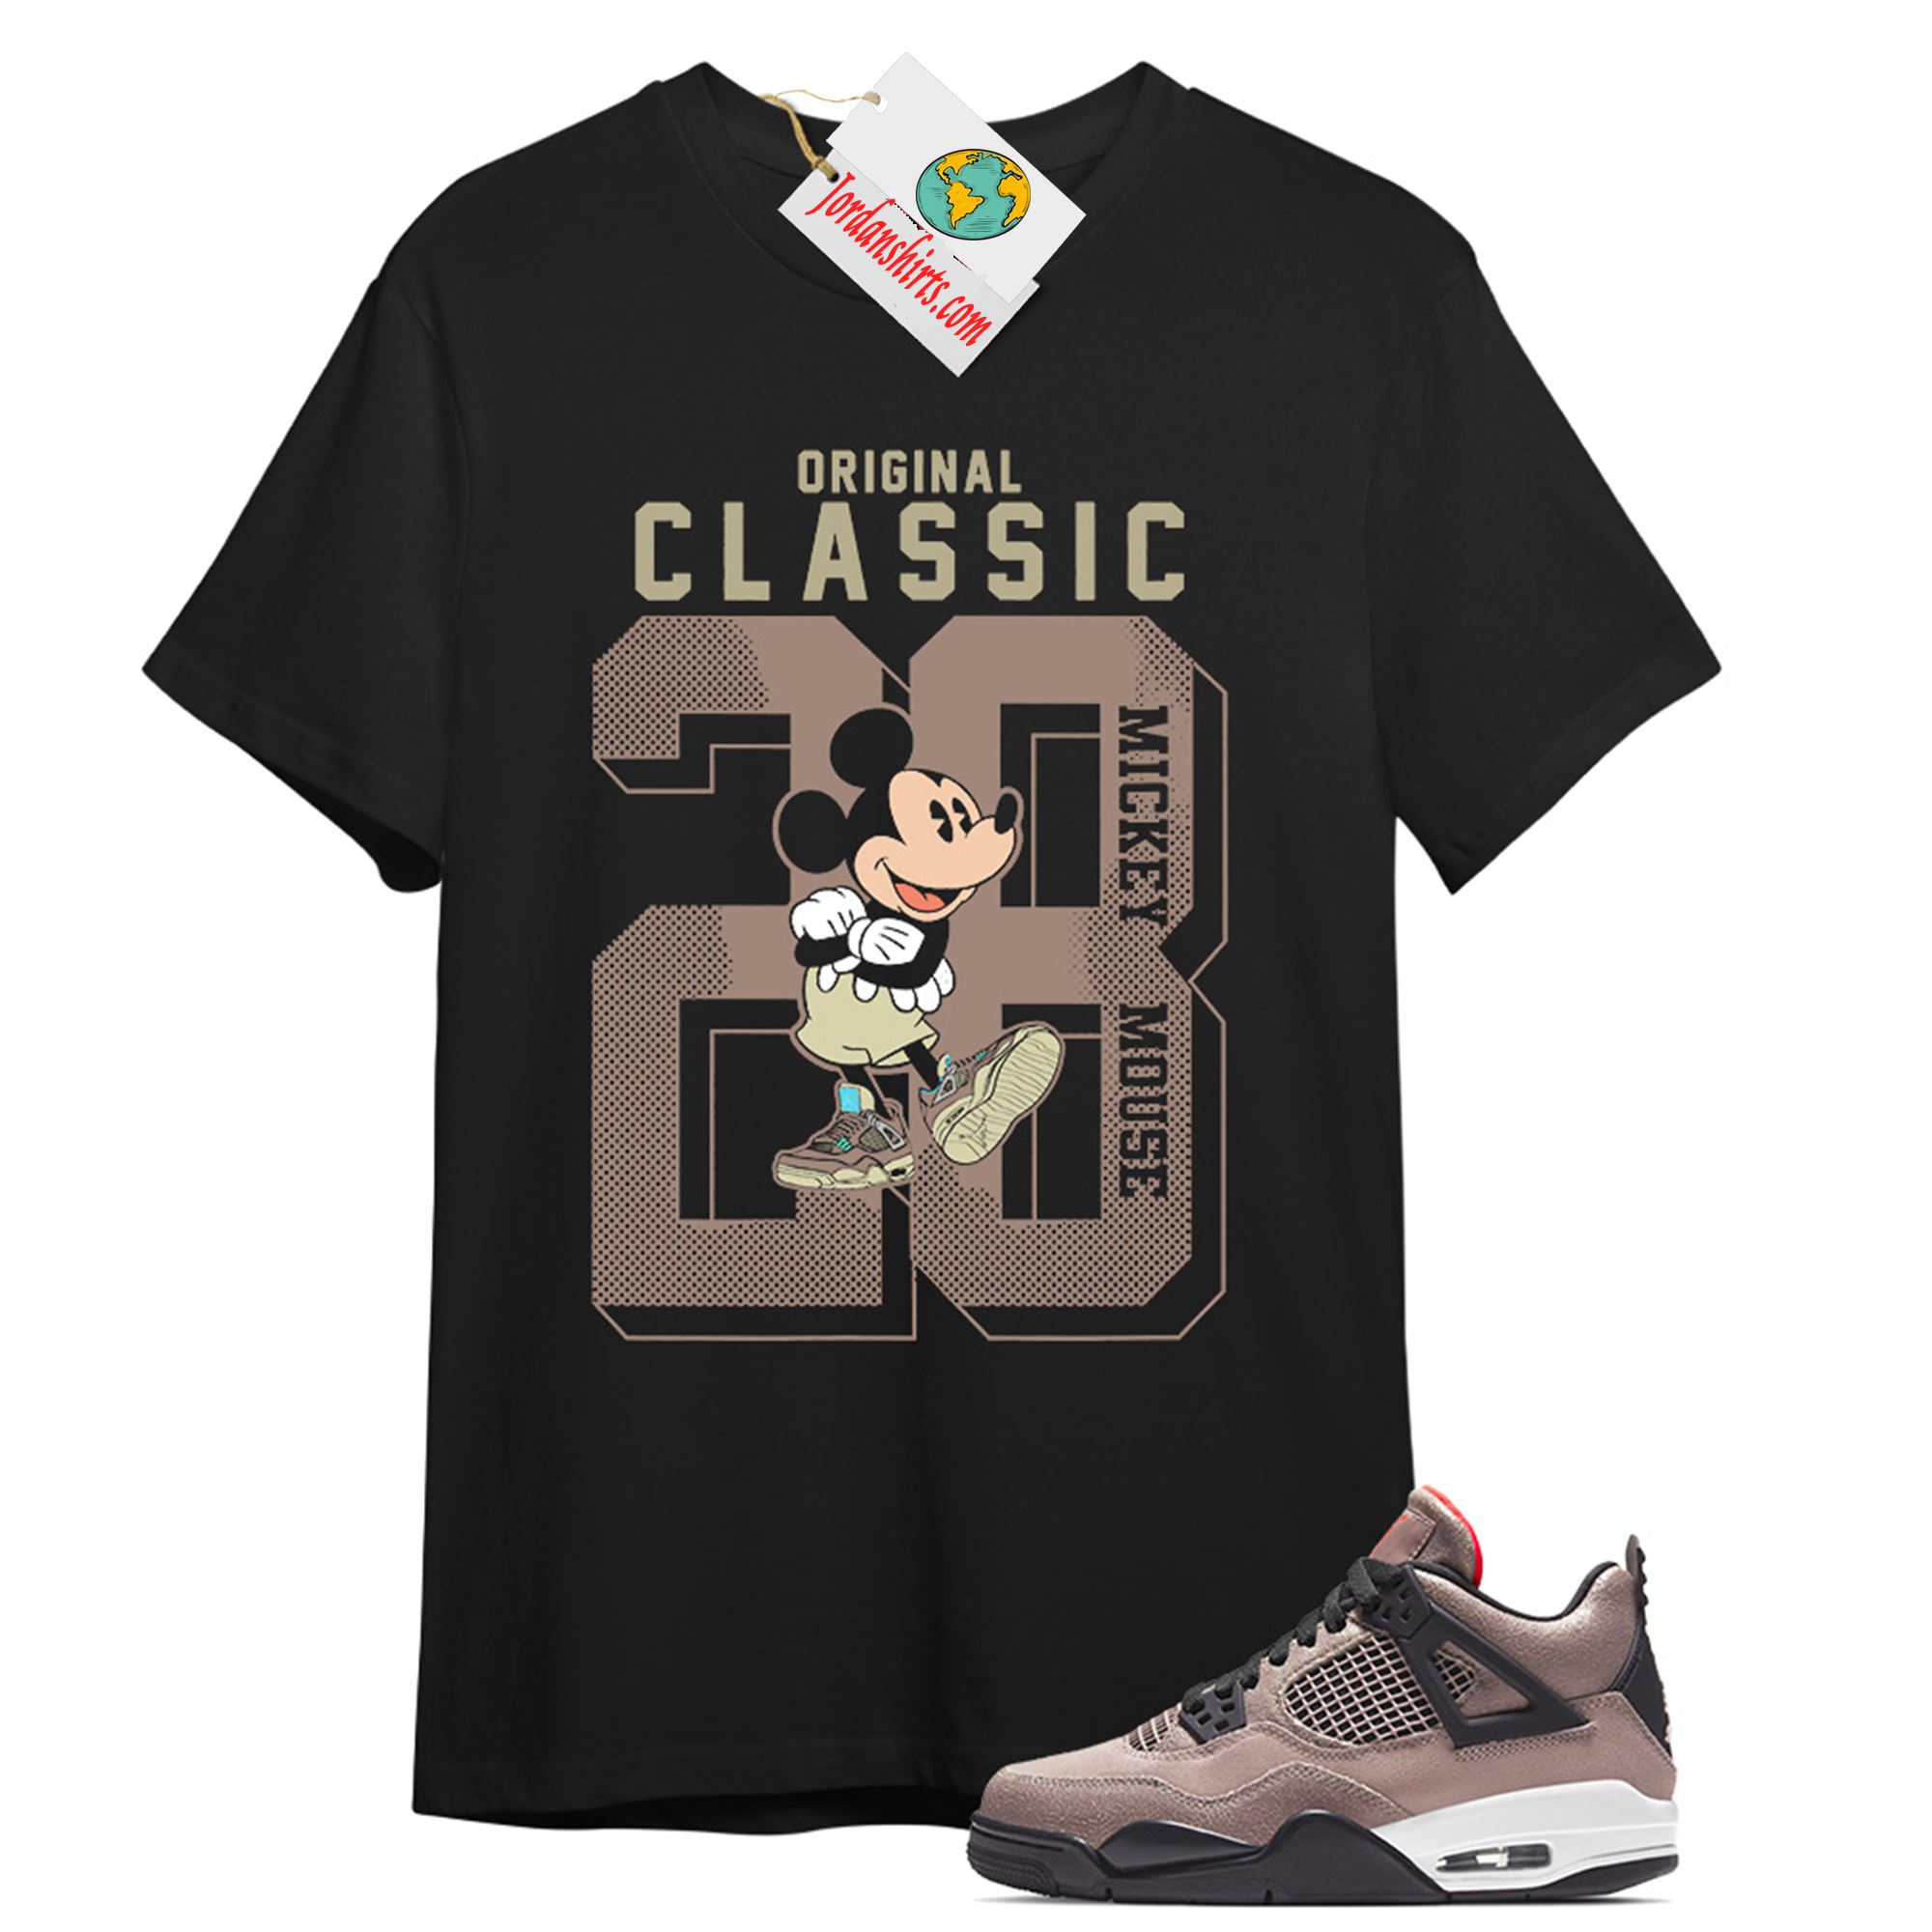 Jordan 4 Shirt, Disney Mickey Mouse Classic 28 Black T-shirt Air Jordan 4 Taupe Haze 4s Plus Size Up To 5xl